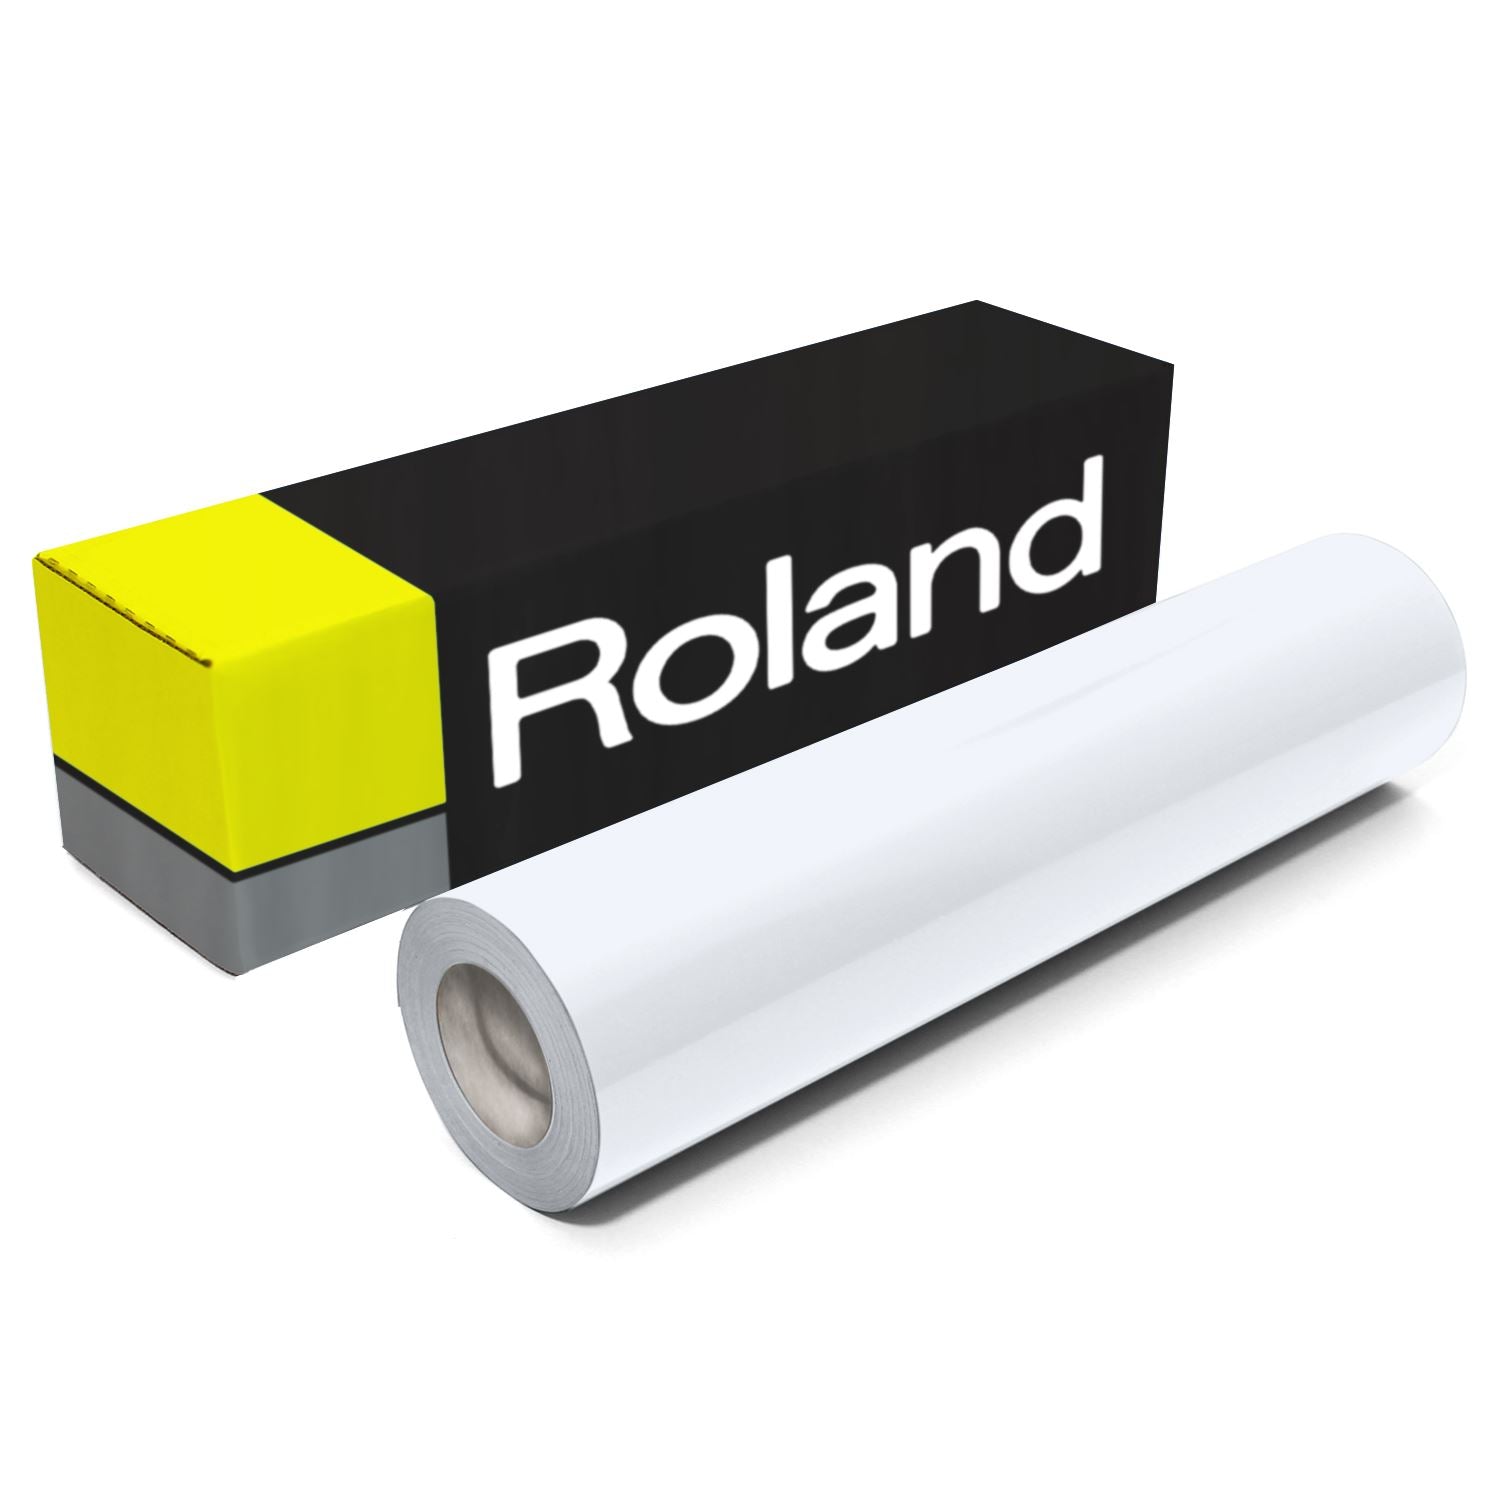 Roland Premium Reflective Vinyl Permanent Adhesive